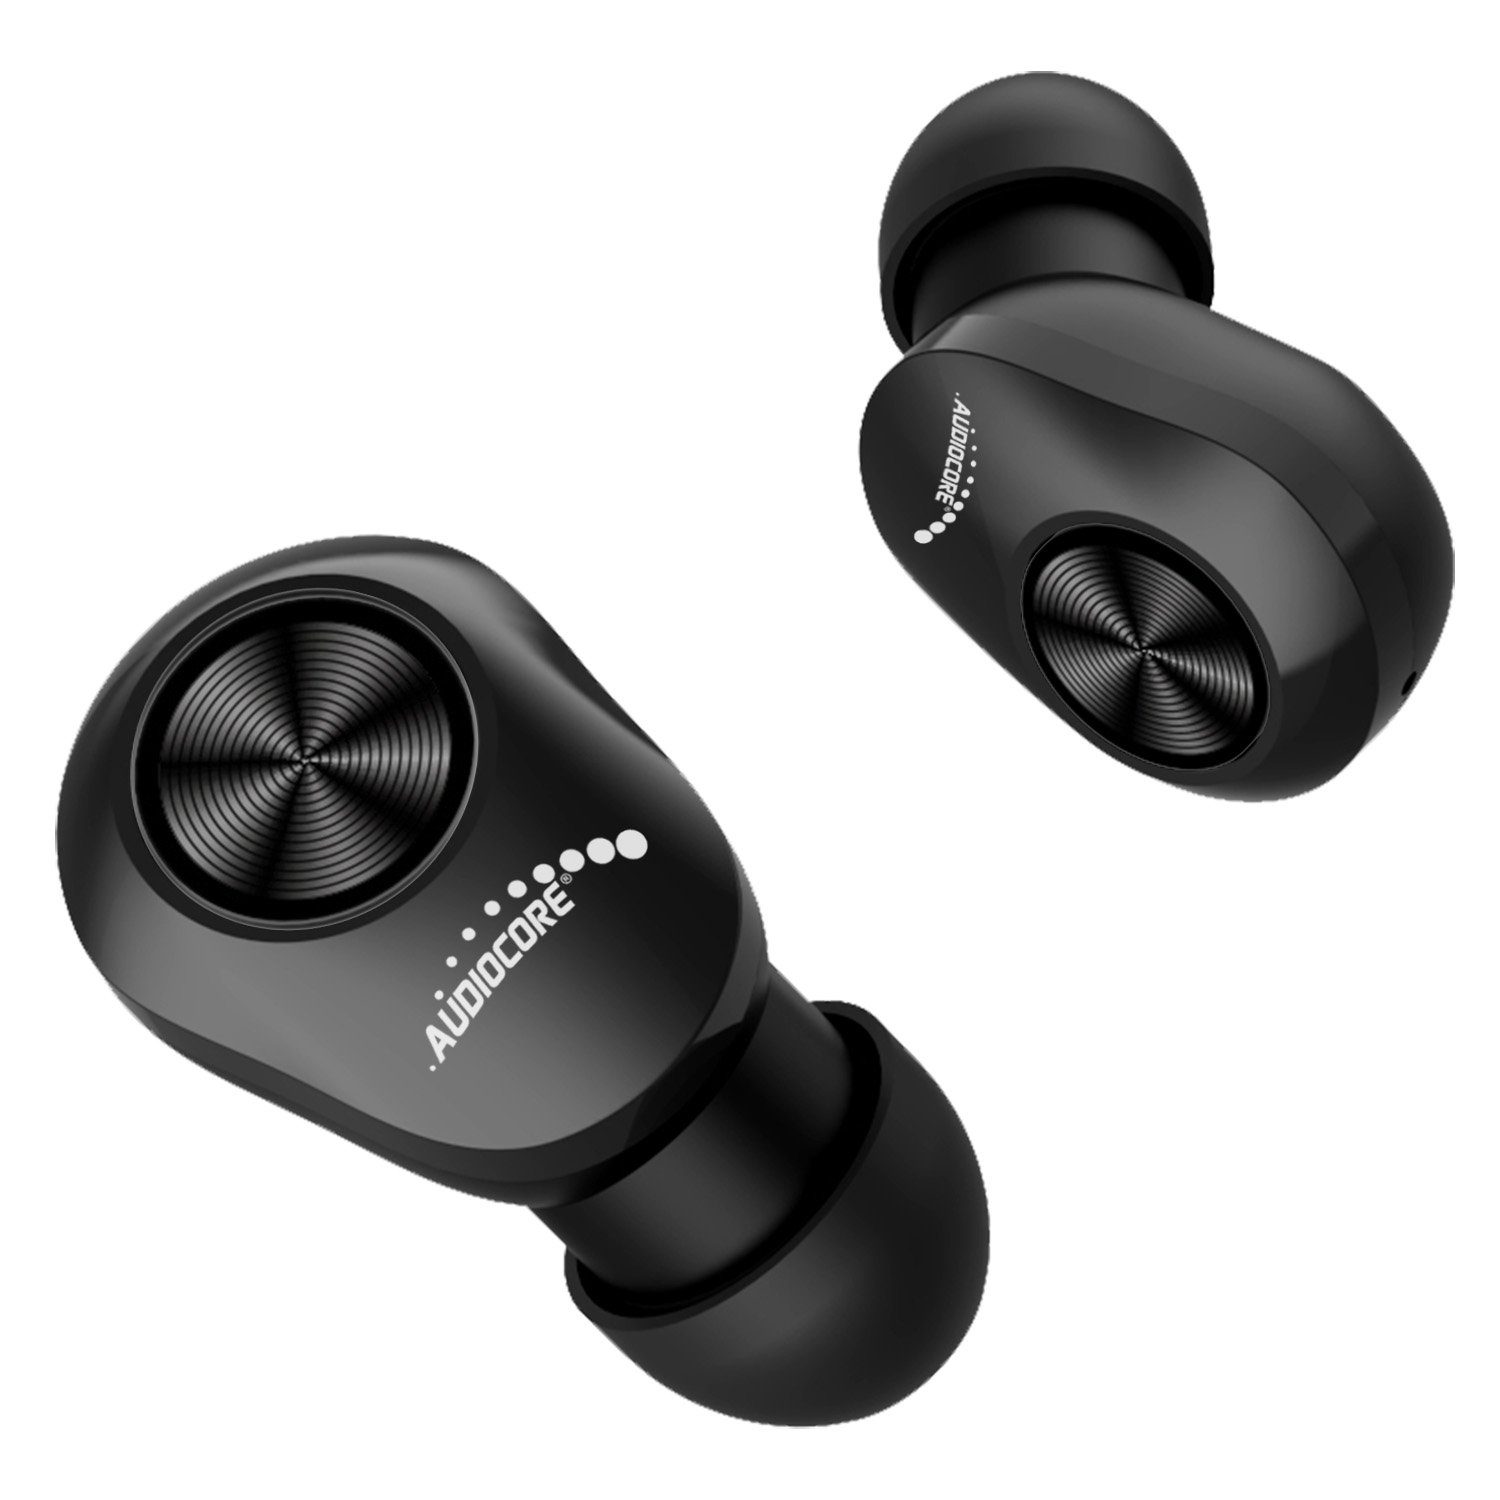 In-Ear-Kopfhörer AC580 Wireless Assistant, wireless (hören, Touch-Bedienung, Mikrofon, Bluetooth, Audiocore Ladebox) Voice integr. TWS [True Stereo],